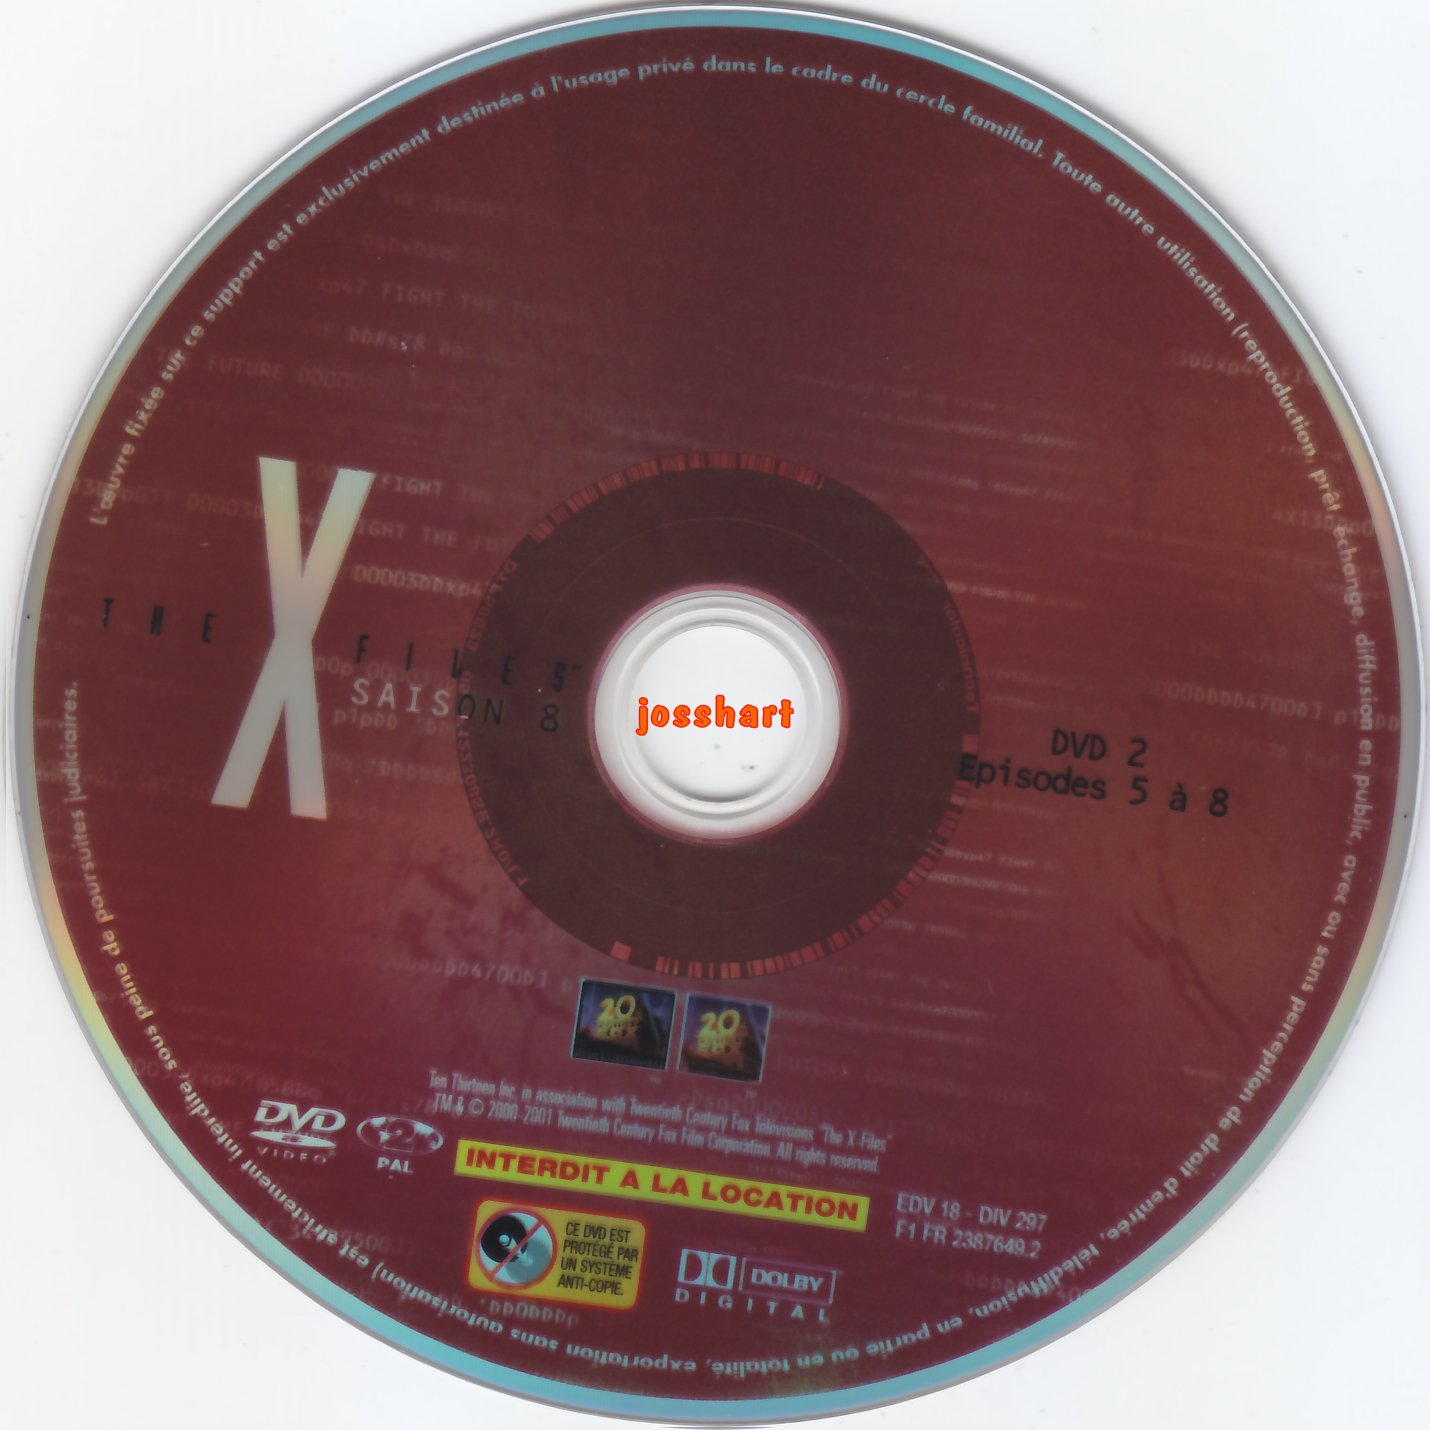 The X Files Saison 8 DVD 2 v2